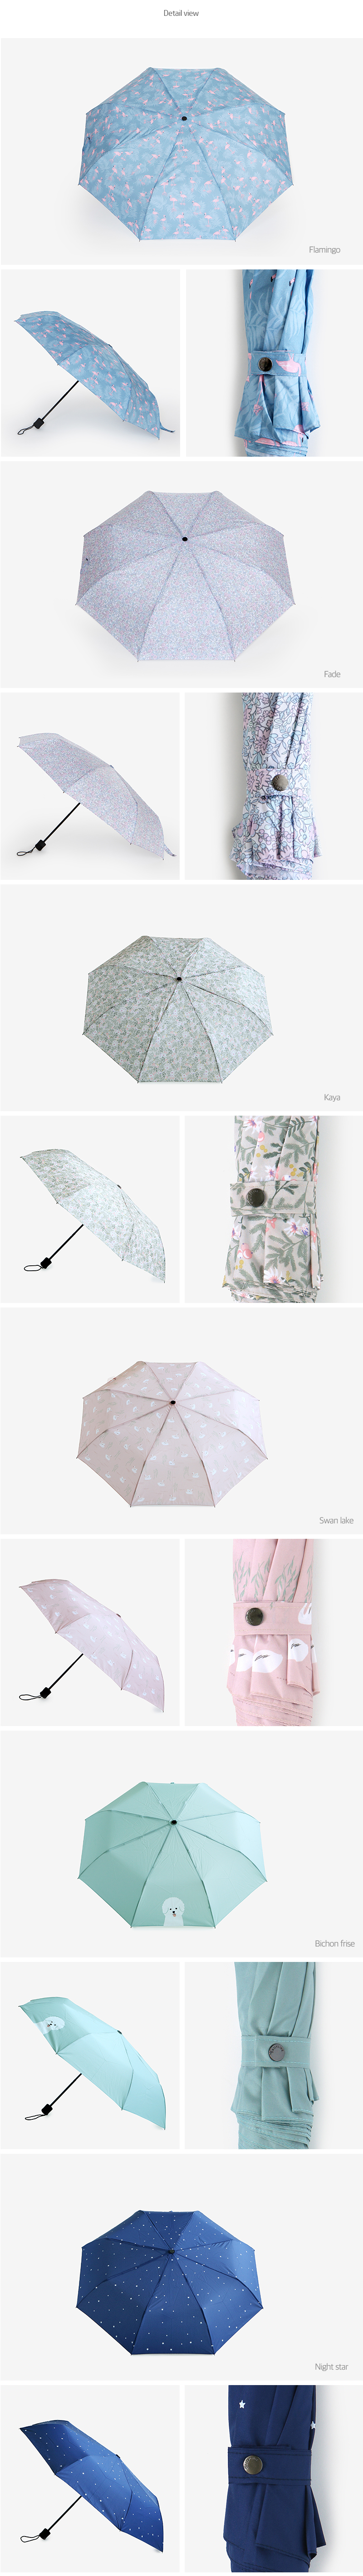 3단 우산[3~8번] 19,000원 - 데일리라이크 패션잡화, 양/우산, 접이식우산, 무지 바보사랑 3단 우산[3~8번] 19,000원 - 데일리라이크 패션잡화, 양/우산, 접이식우산, 무지 바보사랑